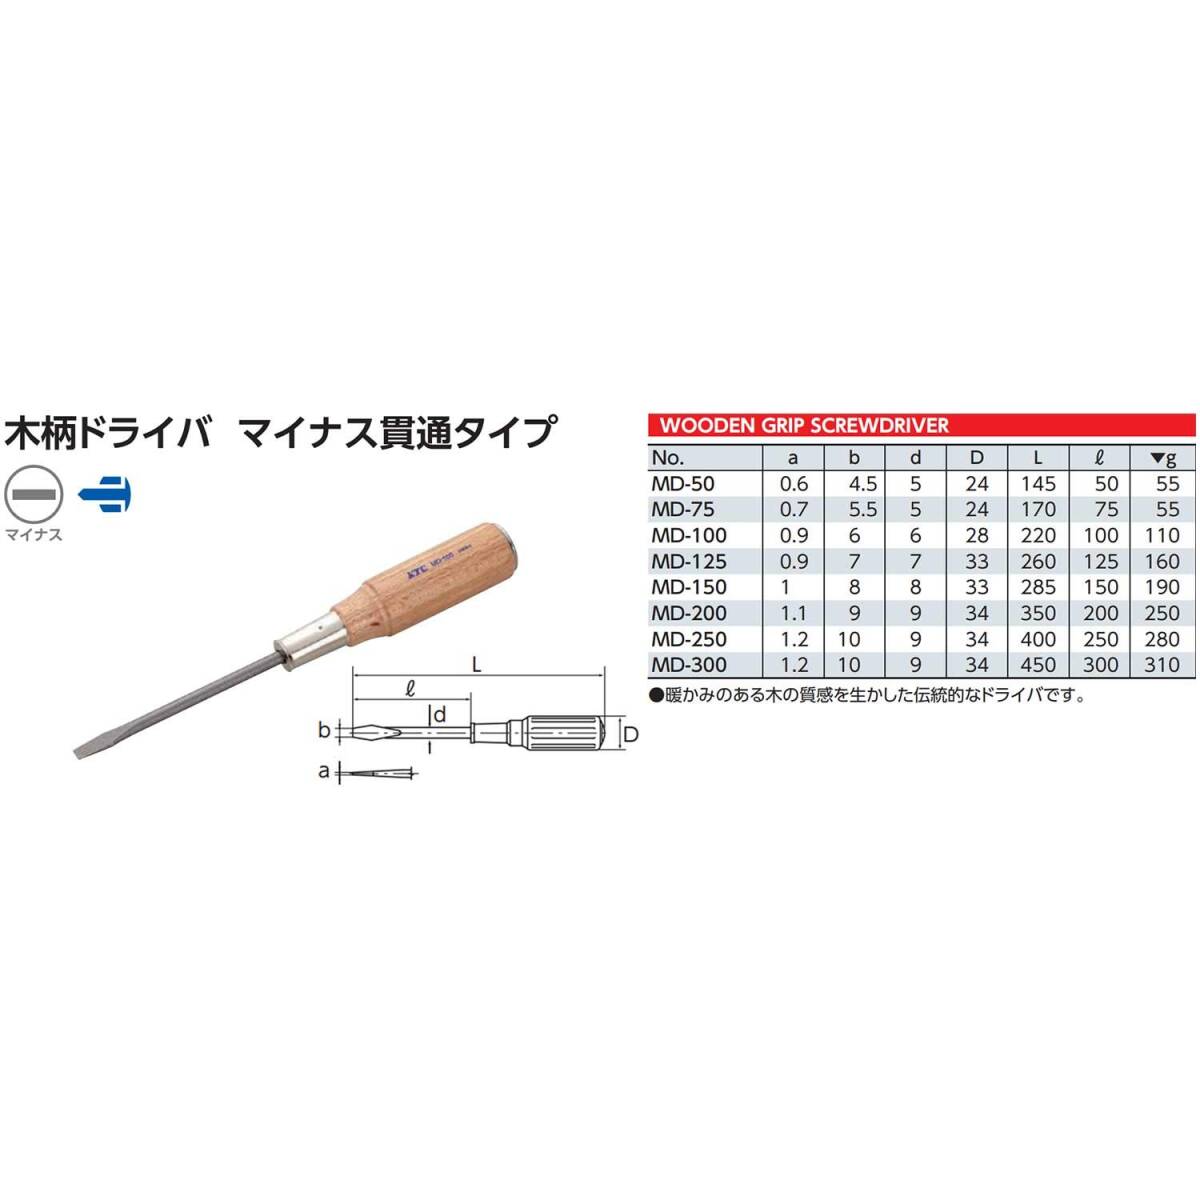 【特価商品】京都機械工具(KTC) 木柄ドライバー マイナス貫通タイプ MD-125_画像2